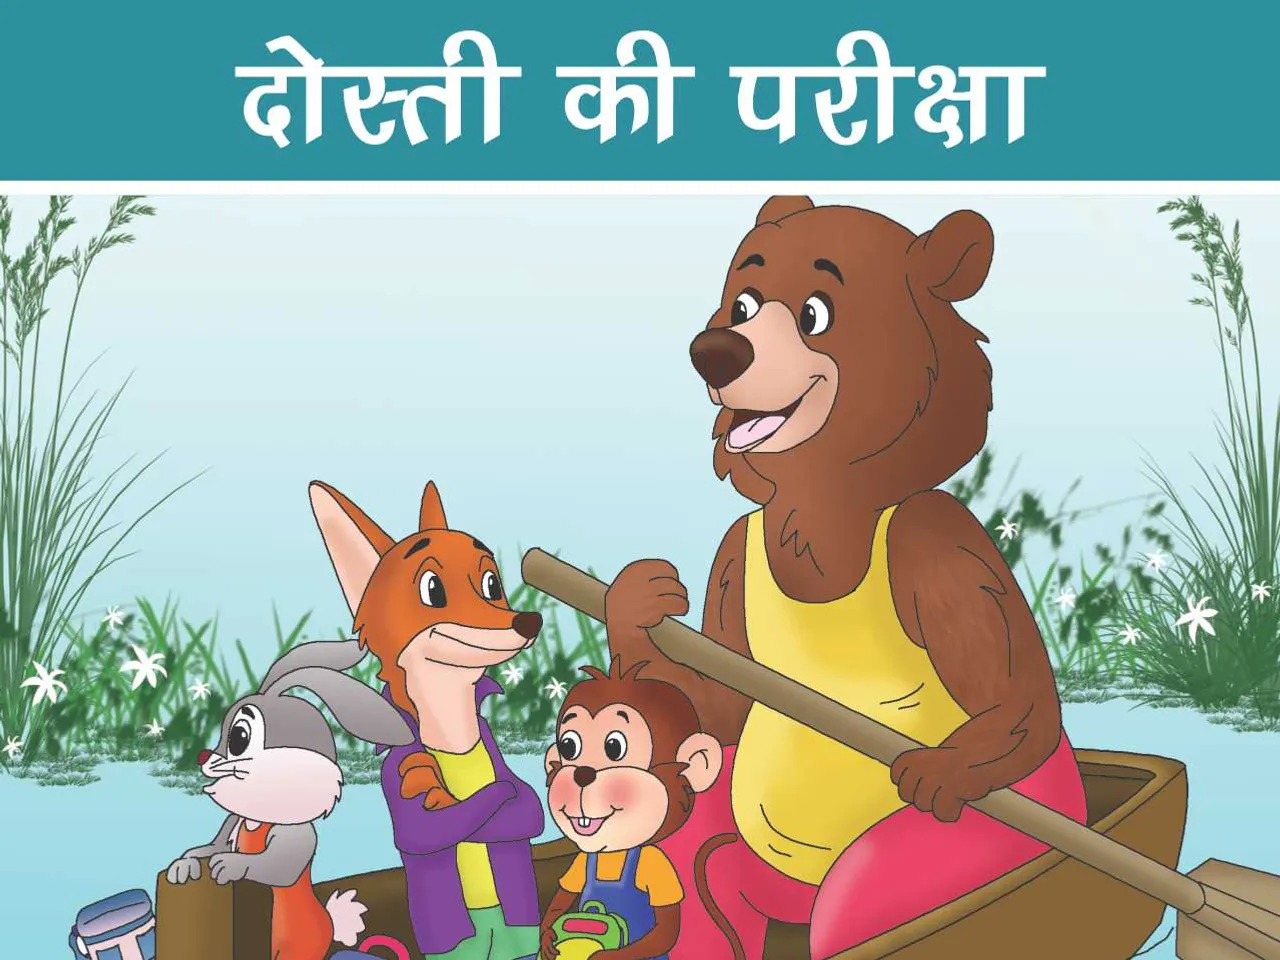 Bear, Monkey, Fox and rabbit on a boat cartoon image